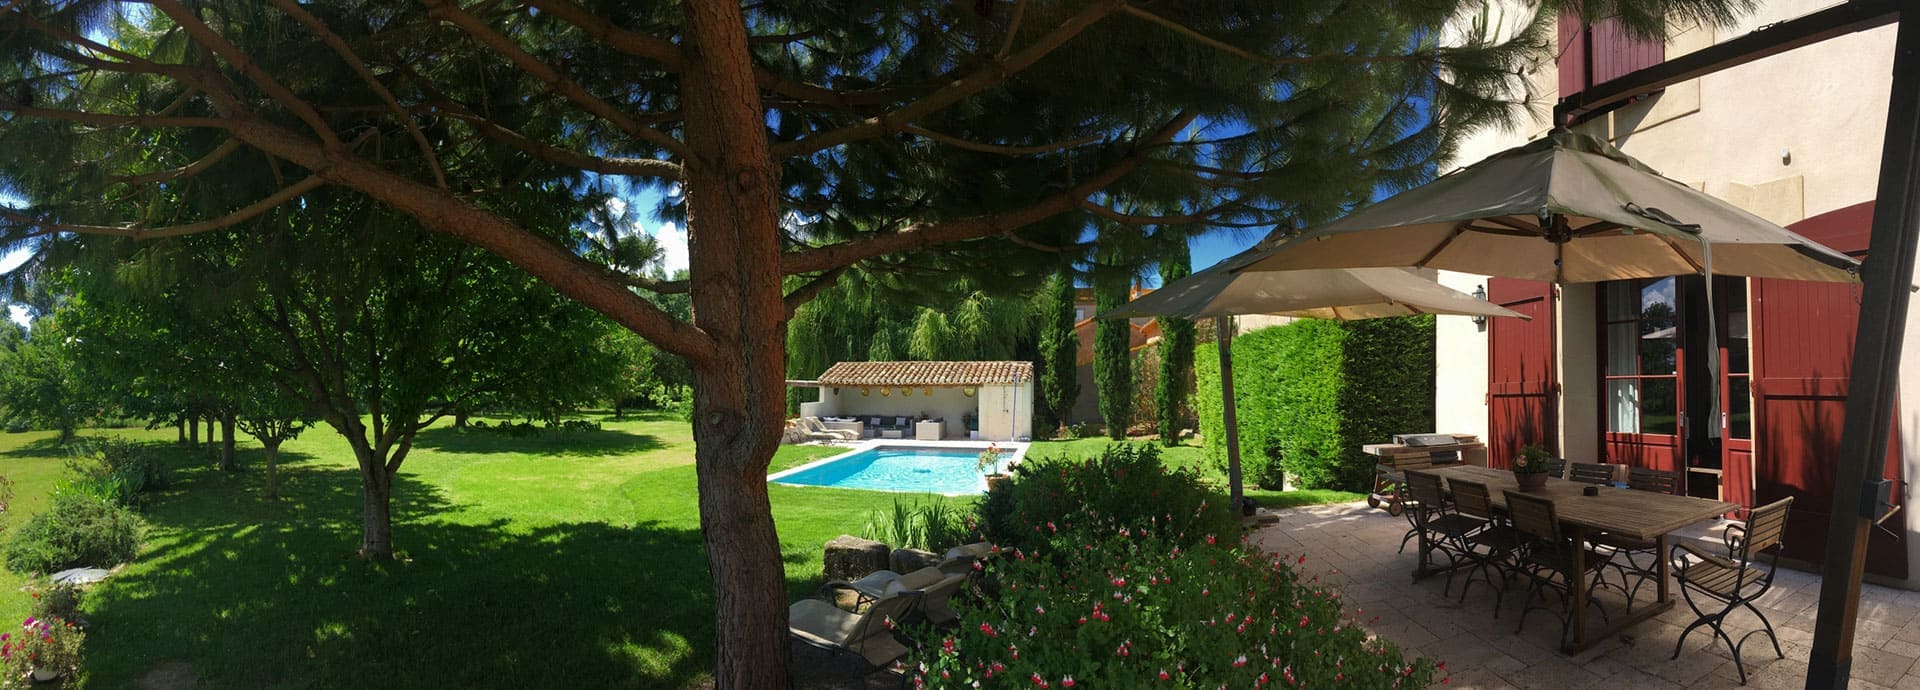 Vue de la terrasse et de la piscine de la maison d’hôte Silène du domaine la Vernède, location de chambres d’hôtes dans l’Hérault